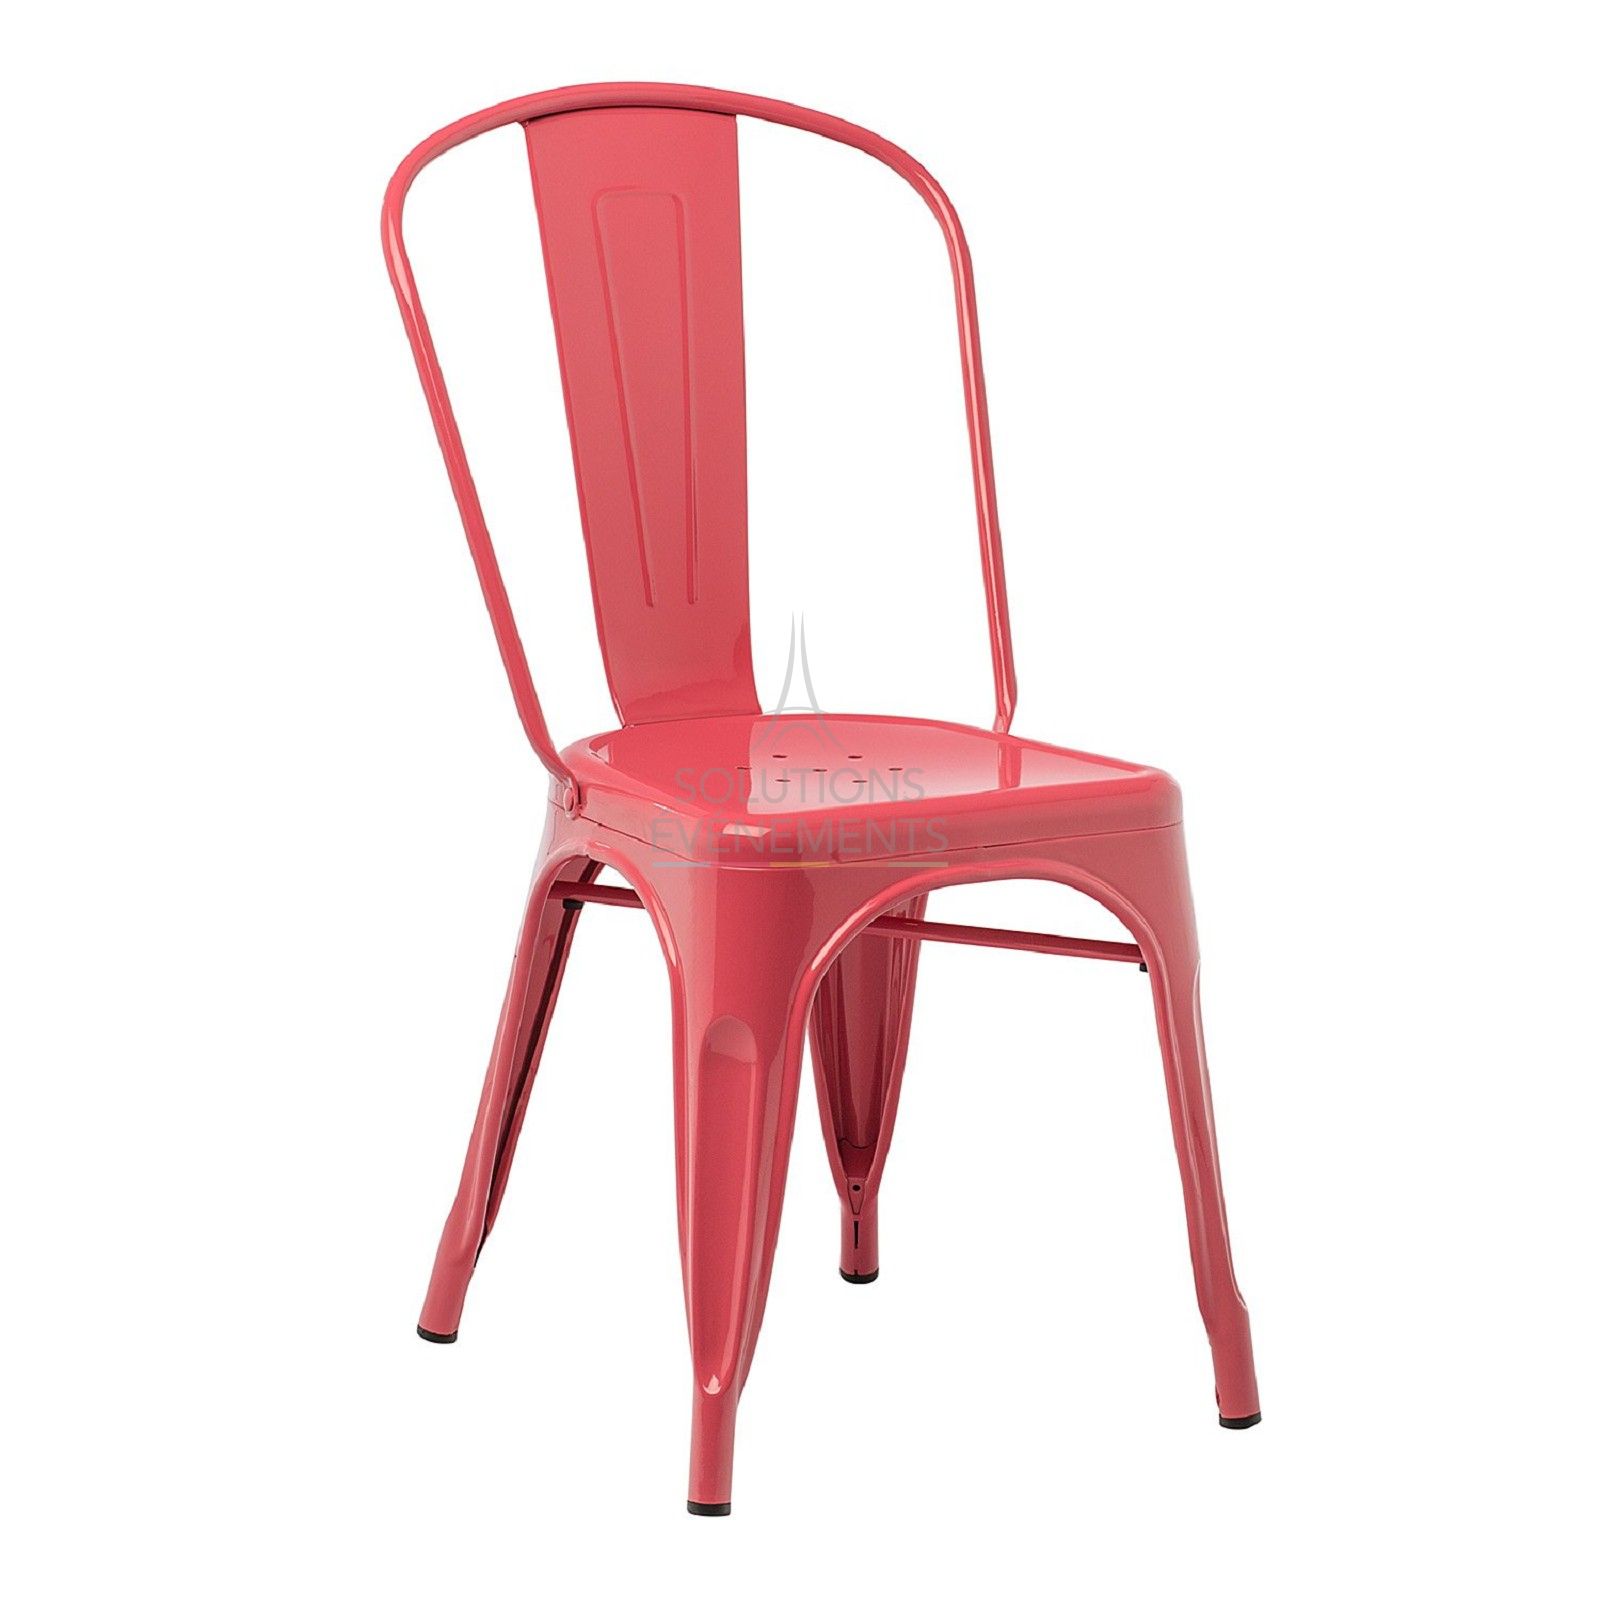 Location de chaise industrielle en metal de couleur rouge framboise